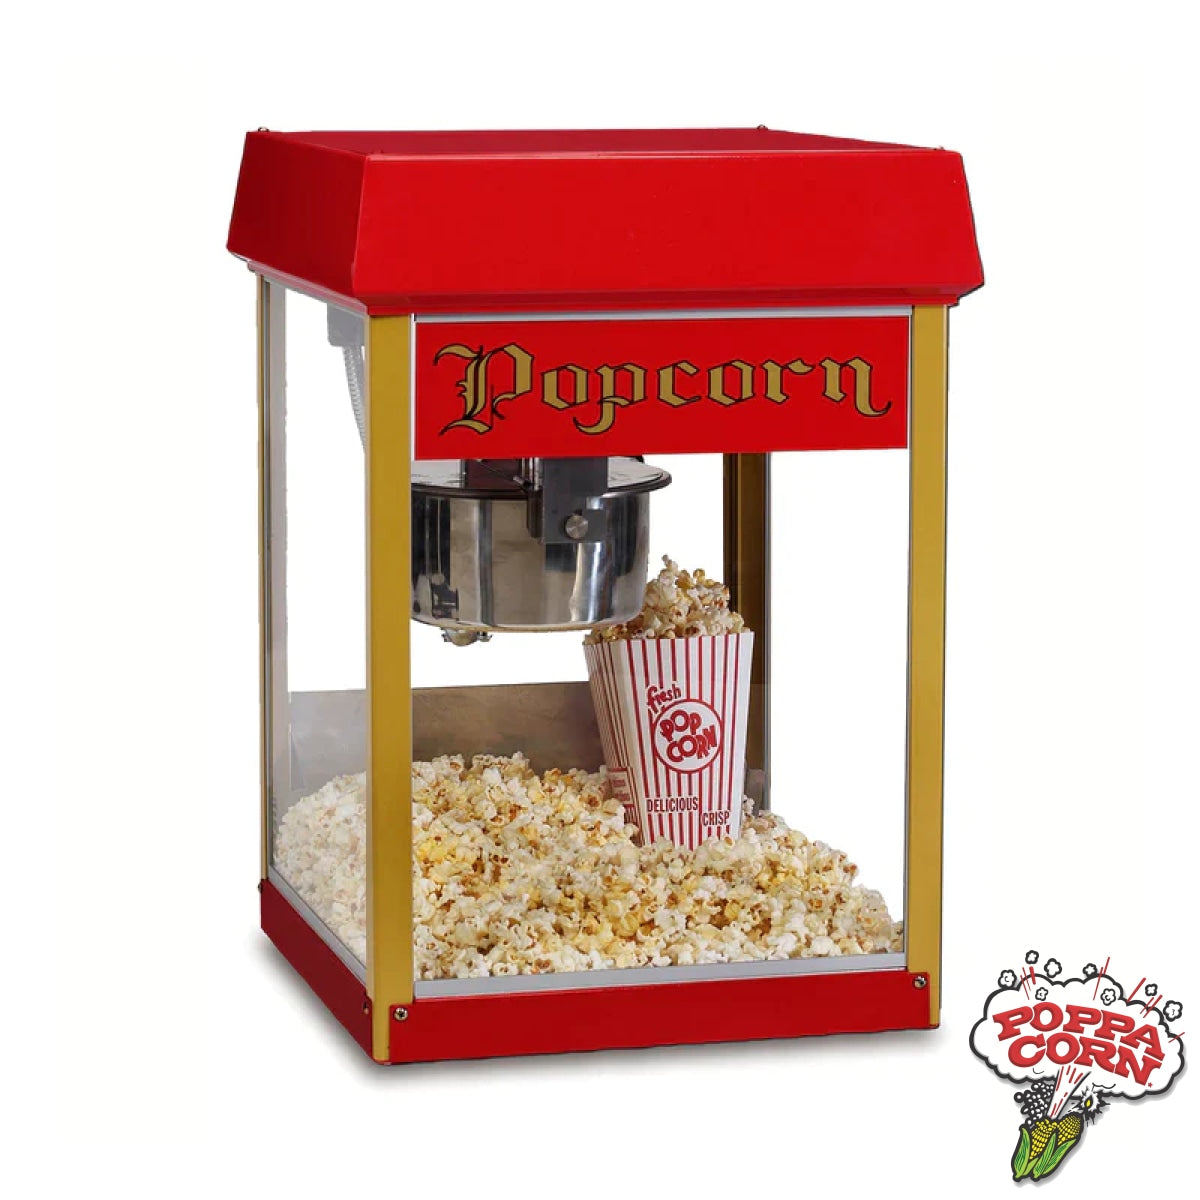 Red Fun Pop 4-Oz. Popcorn Machine - Gm2404U Demo Equipment